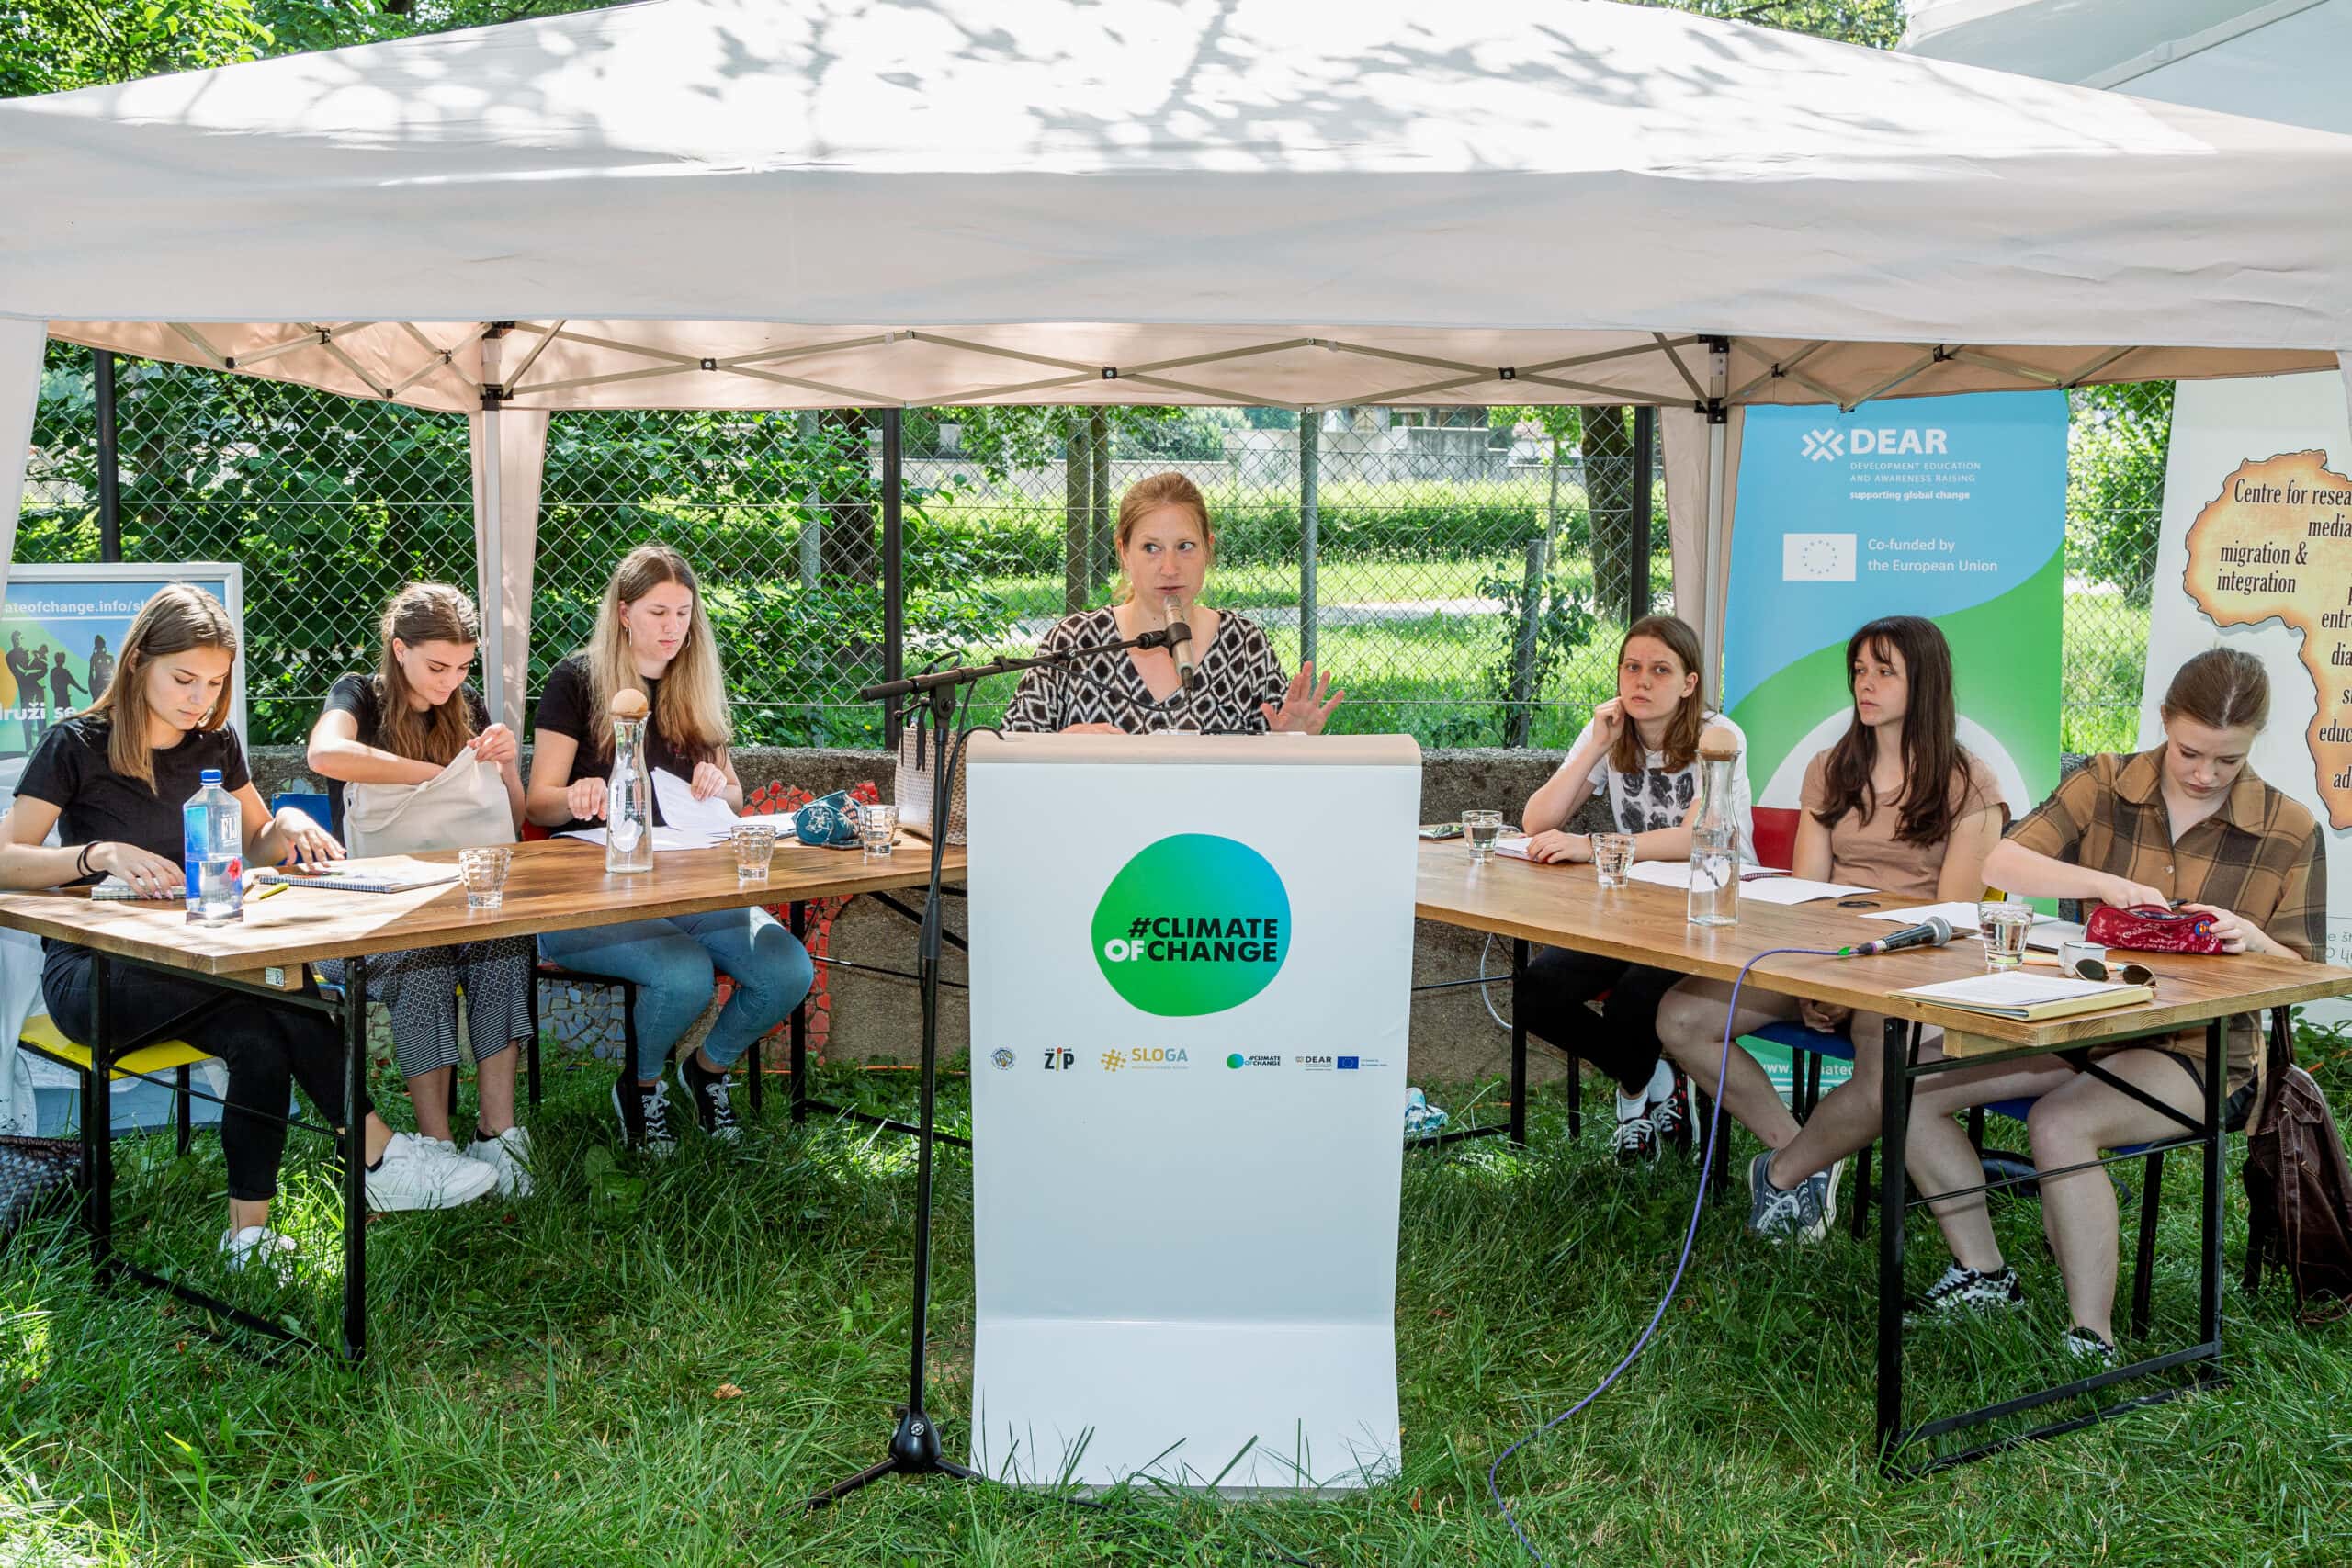 Ob dnevu mladih Platforma SLOGA opozarja na medgeneracijsko solidarnost med podnebno krizo